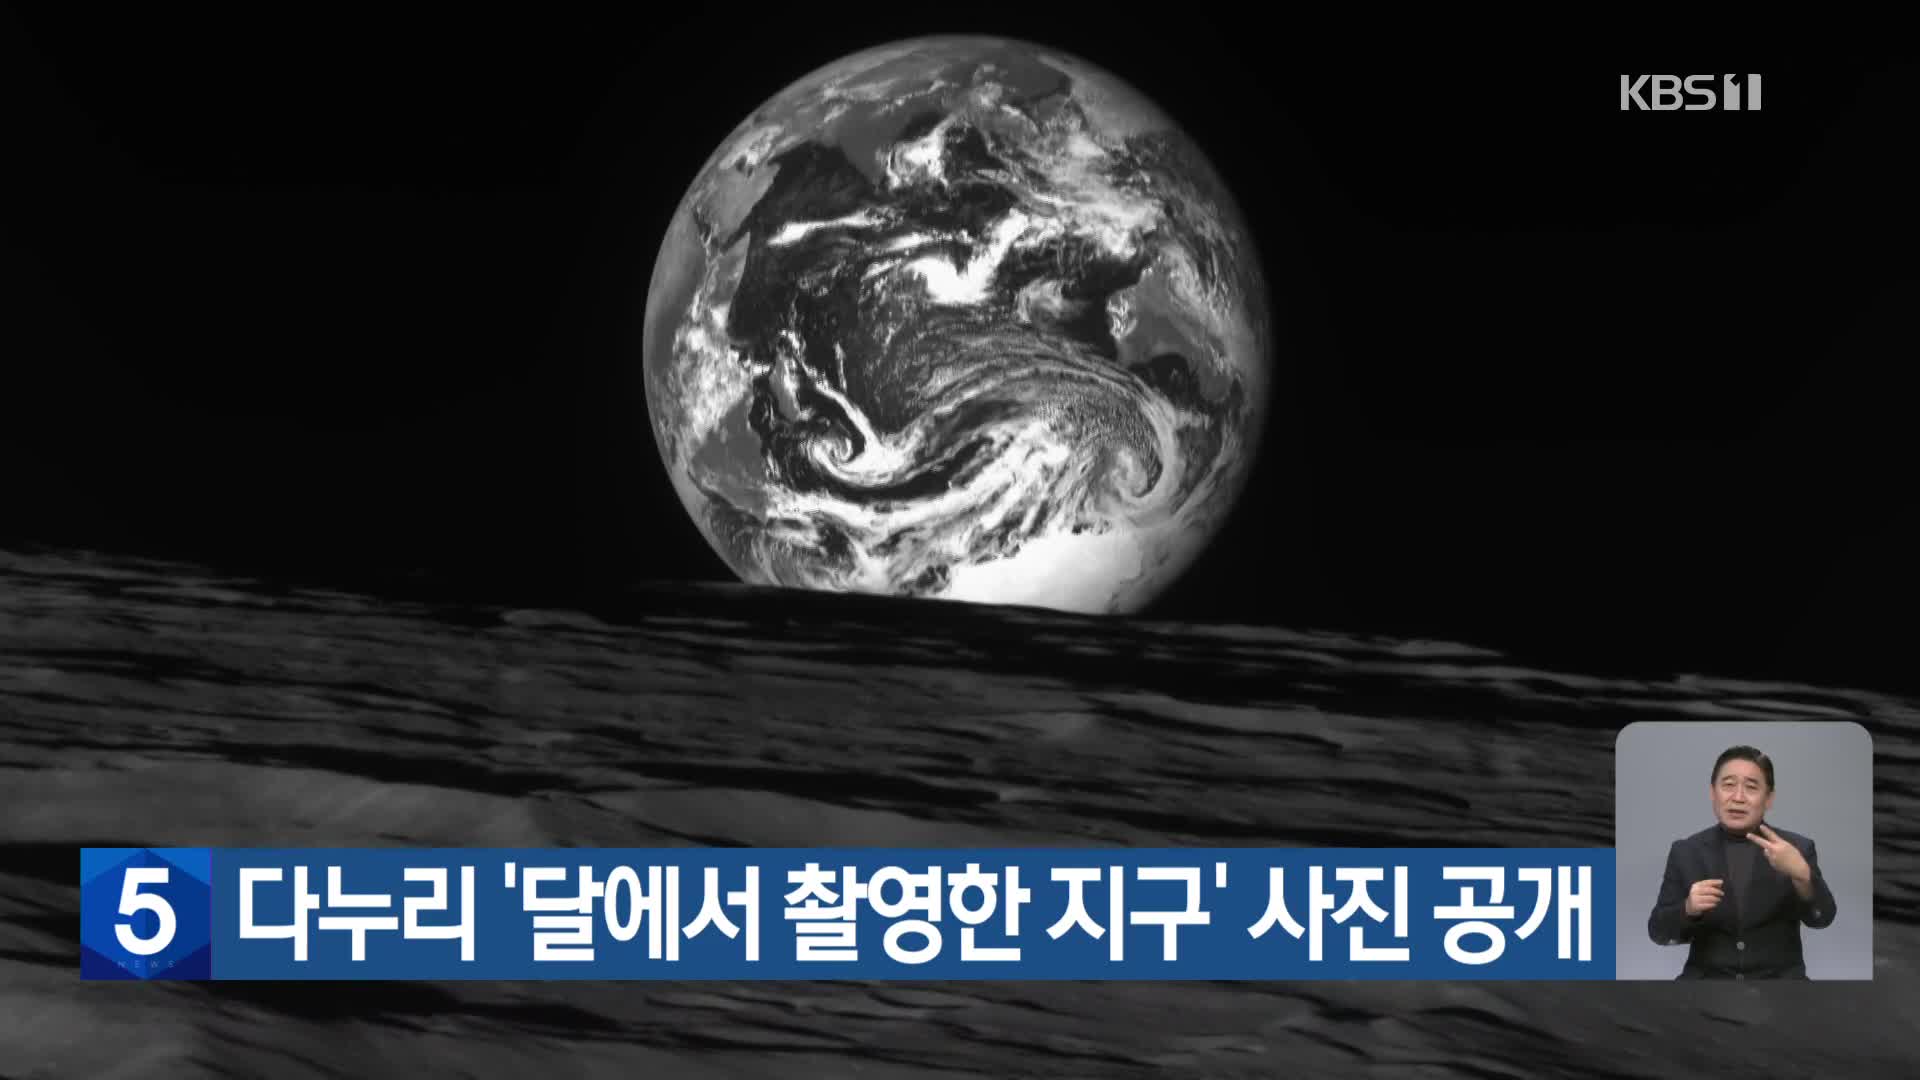 다누리 ‘달에서 촬영한 지구’ 사진 공개